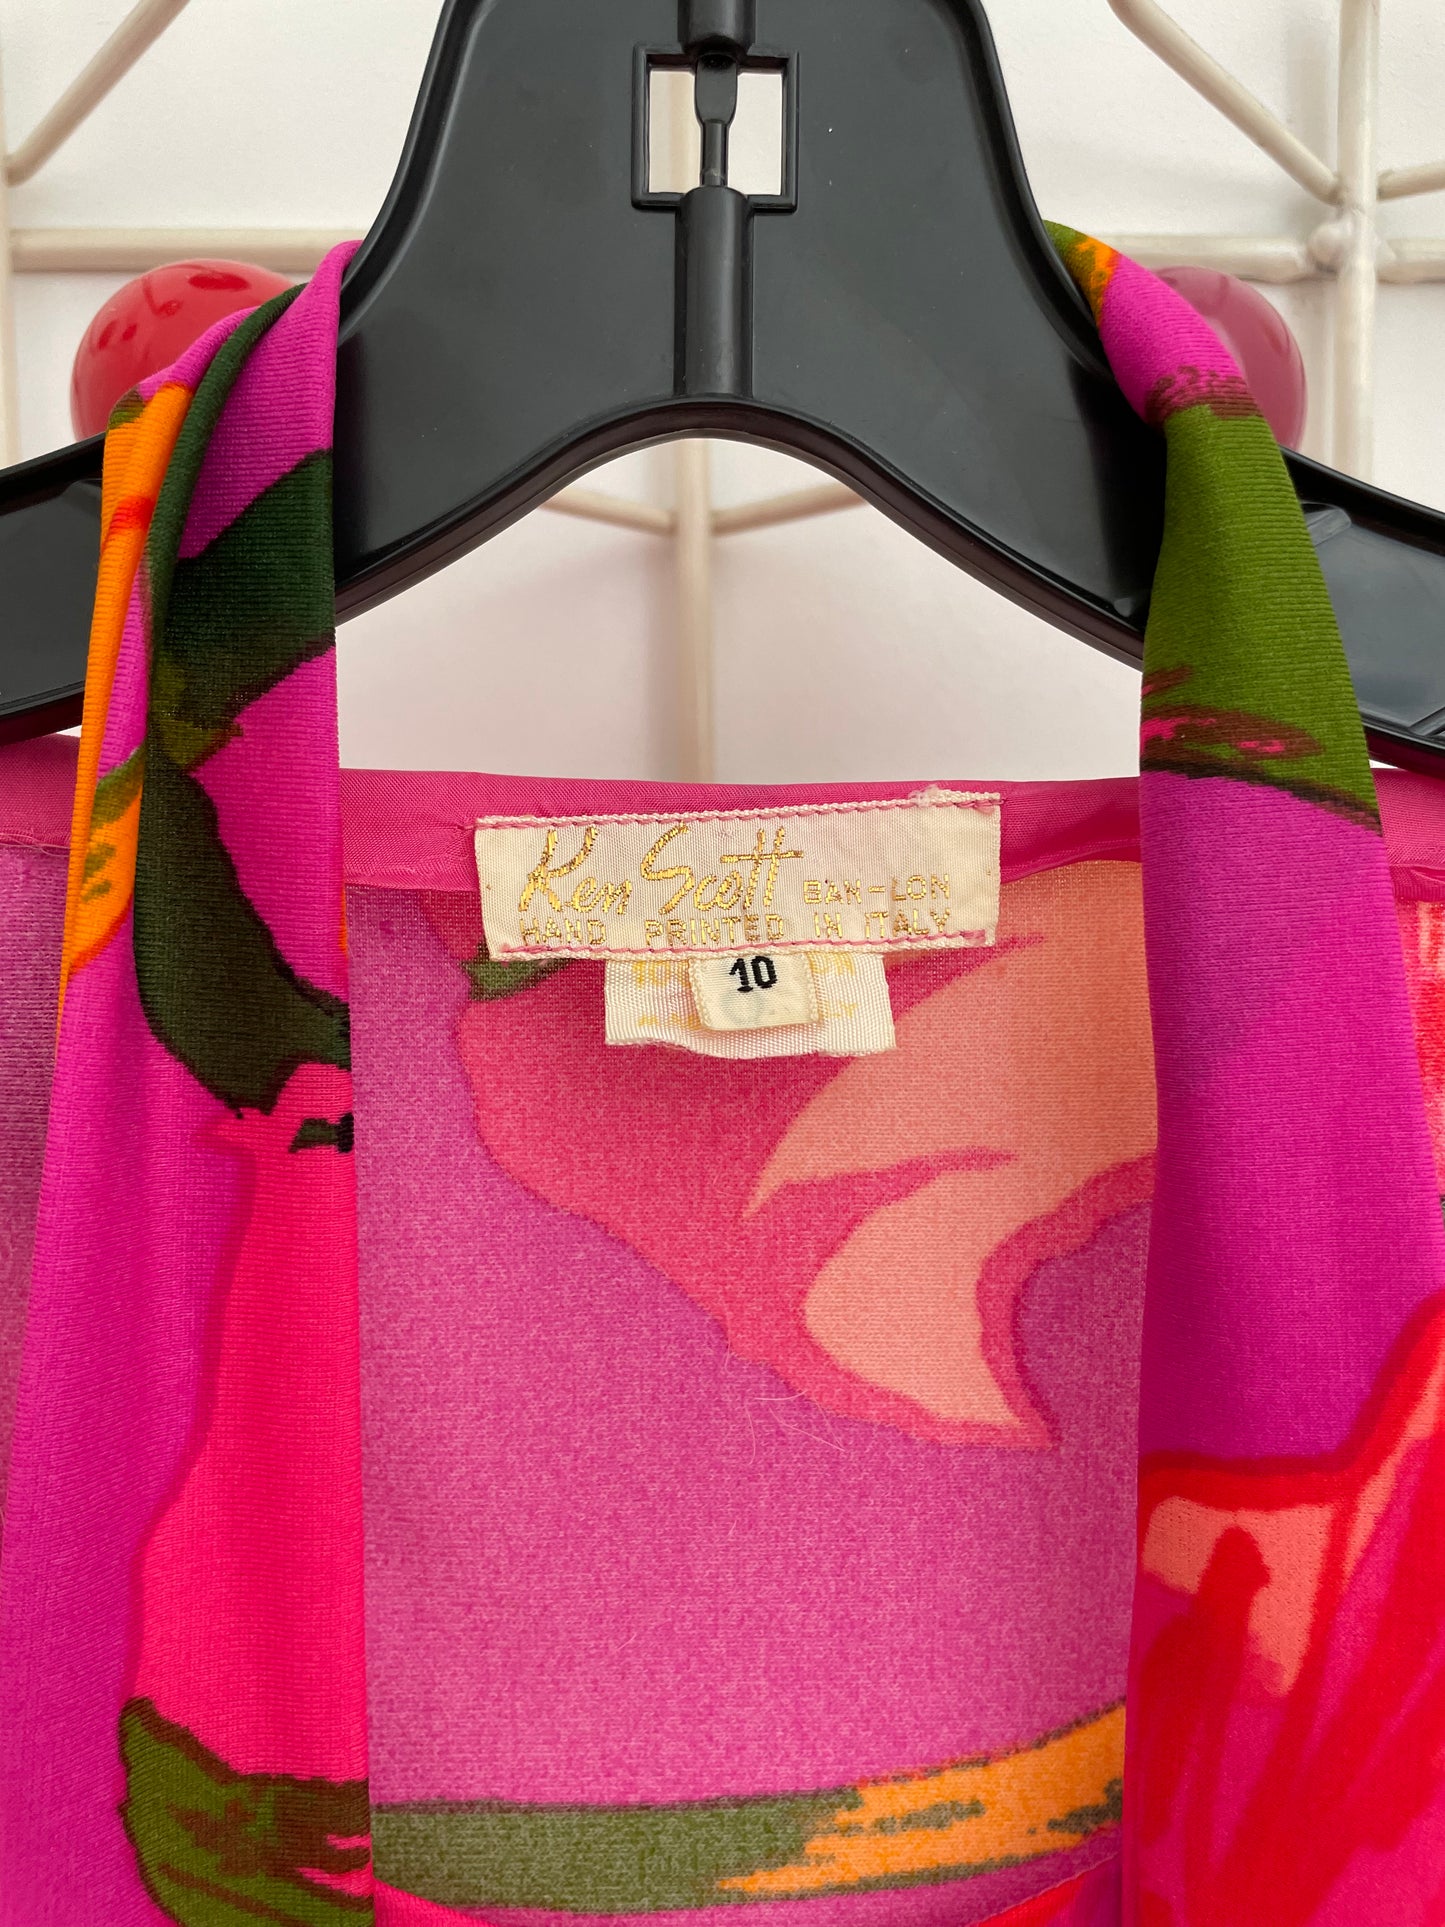 Ken Scott 70's flower print dress with matching belt/scarf